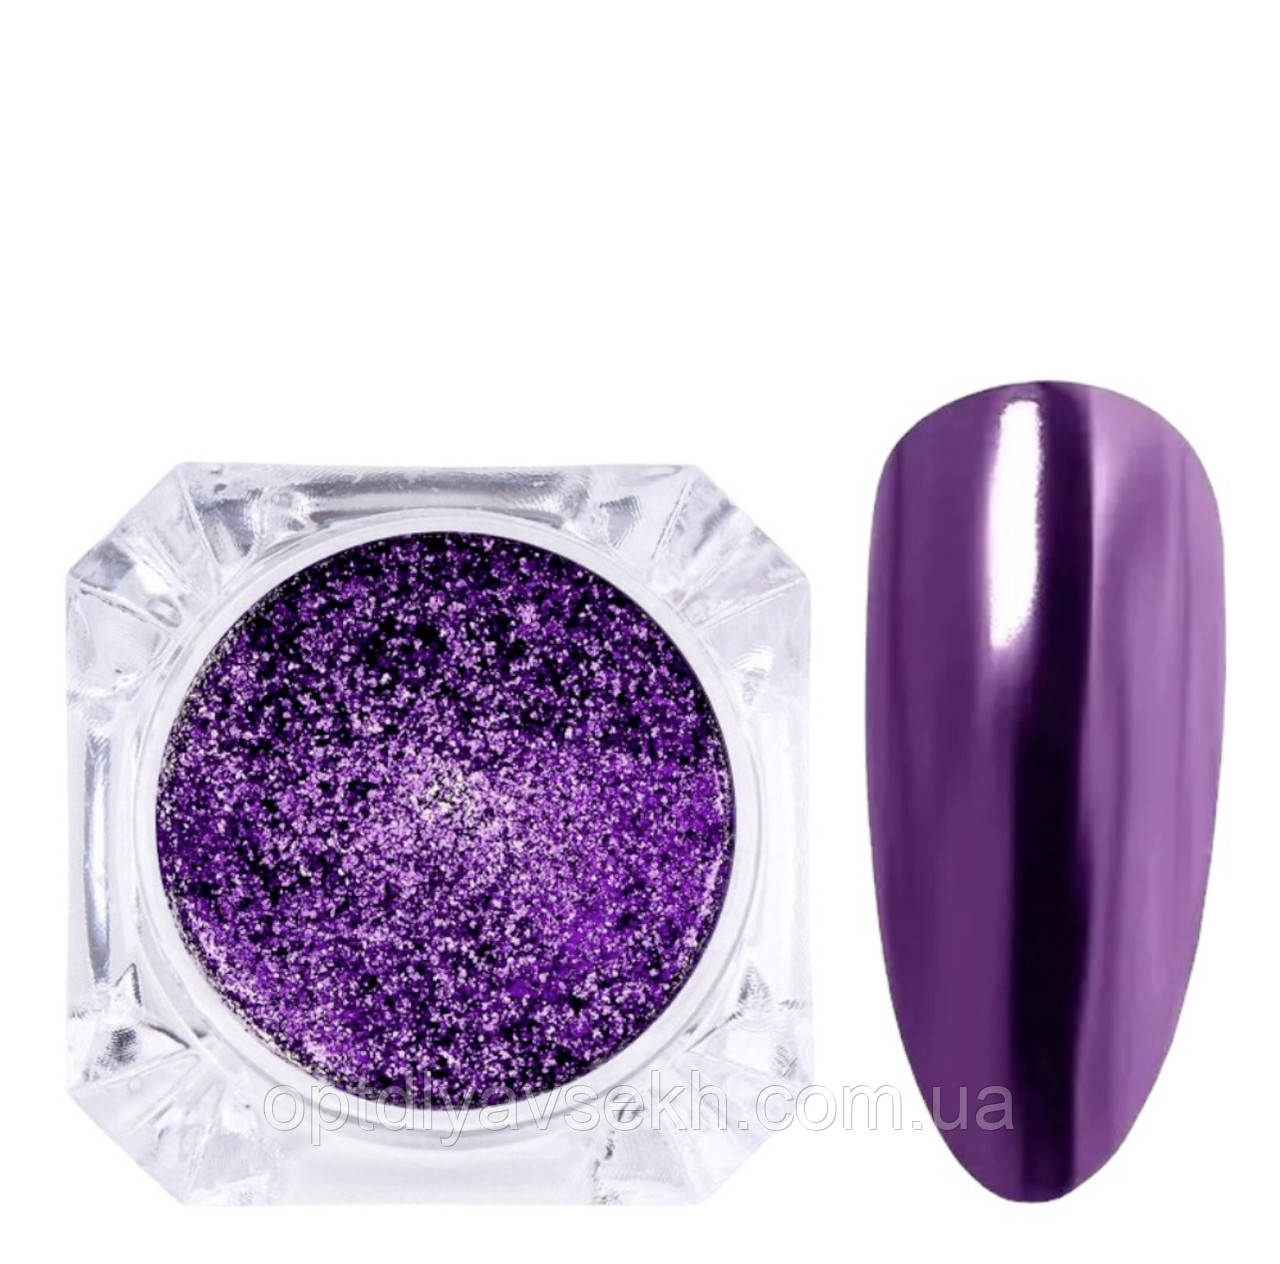 Дзеркальна втирка Night Charm Purple для дизайну нігтів, фіолетова